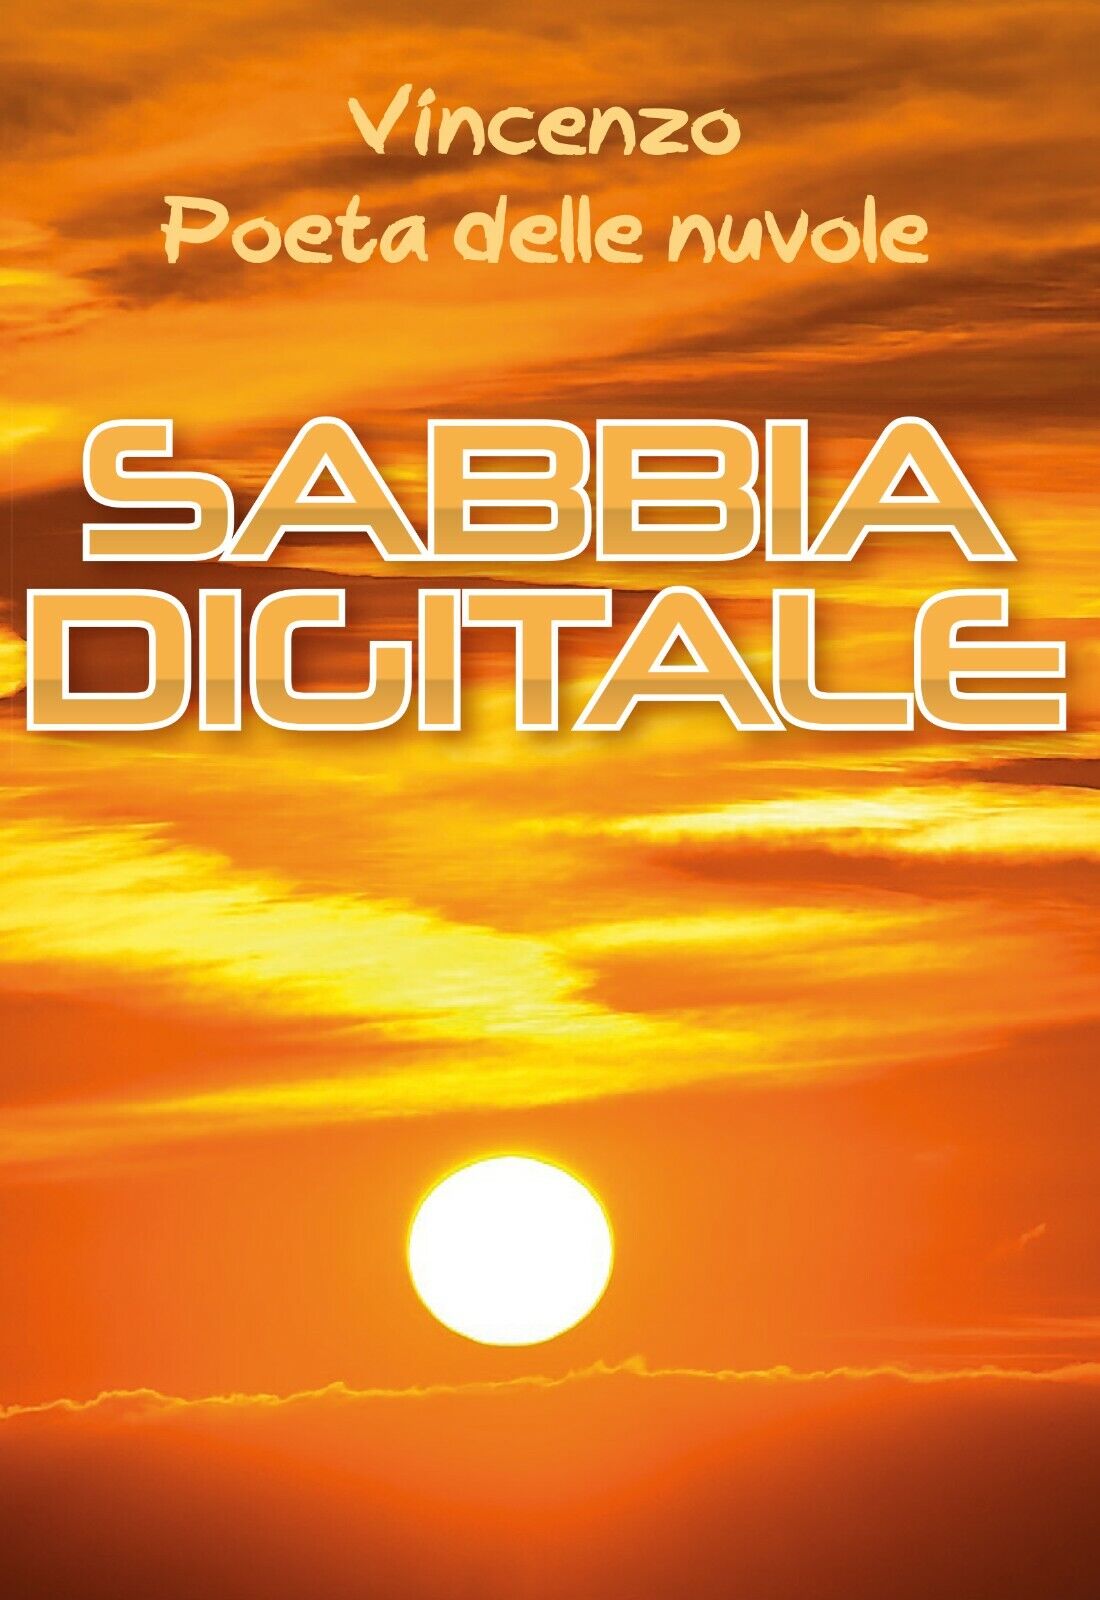 Sabbia digitale di Vincenzo Poeta Delle Nuvole,  2020,  Youcanprint